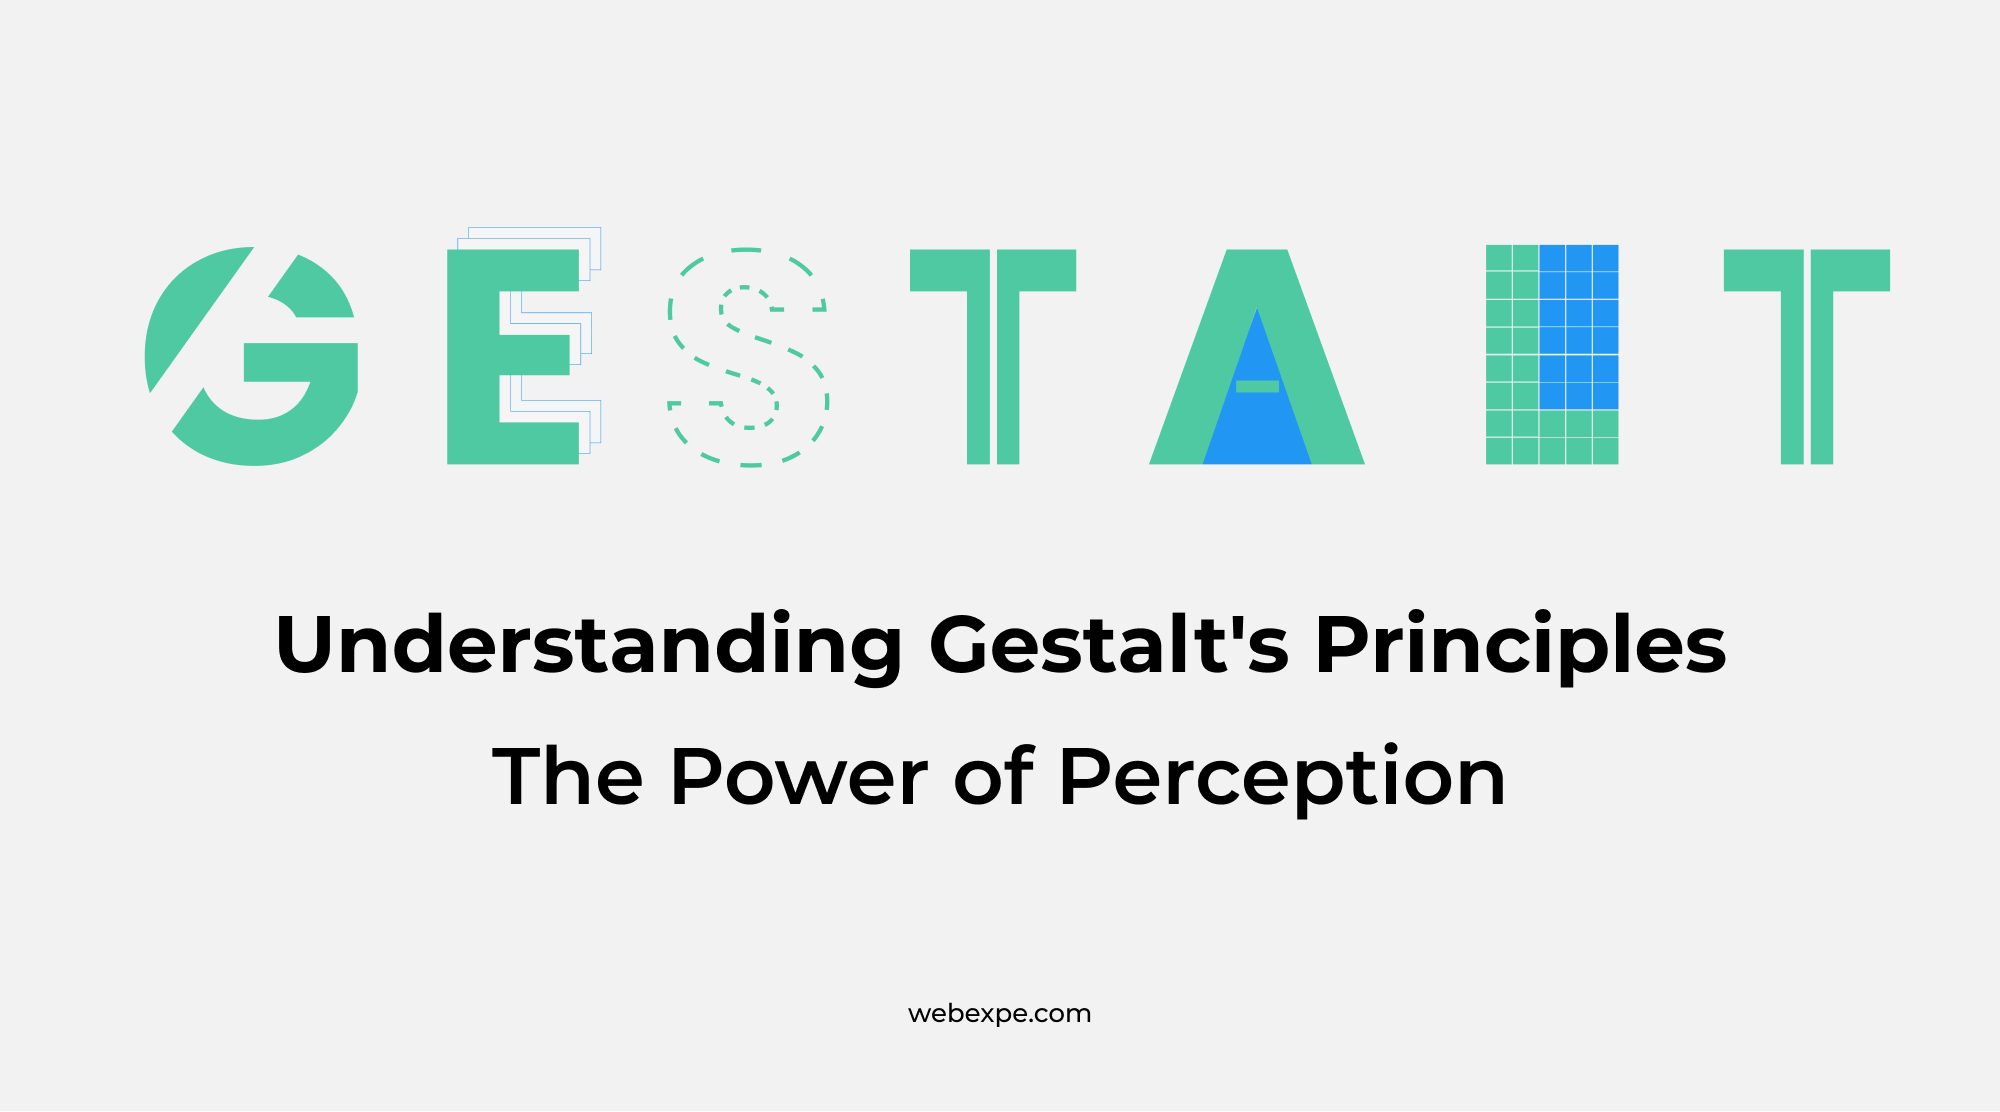 Understanding Gestalt's Principles & The Power of Perception.